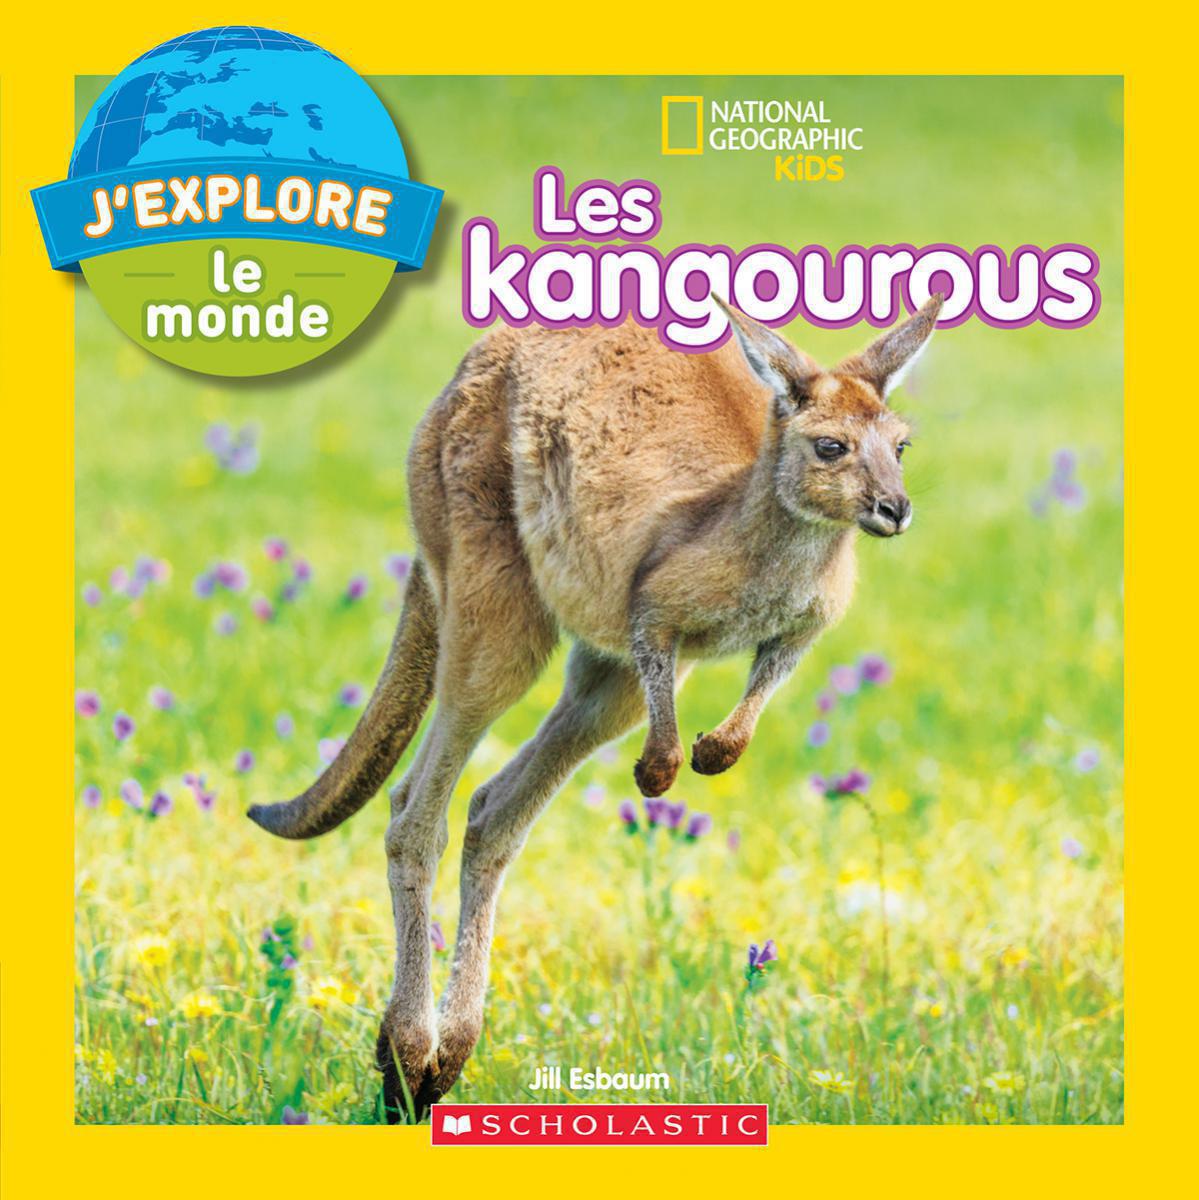  National Geographic Kids : J'explore le monde : Les kangourous 